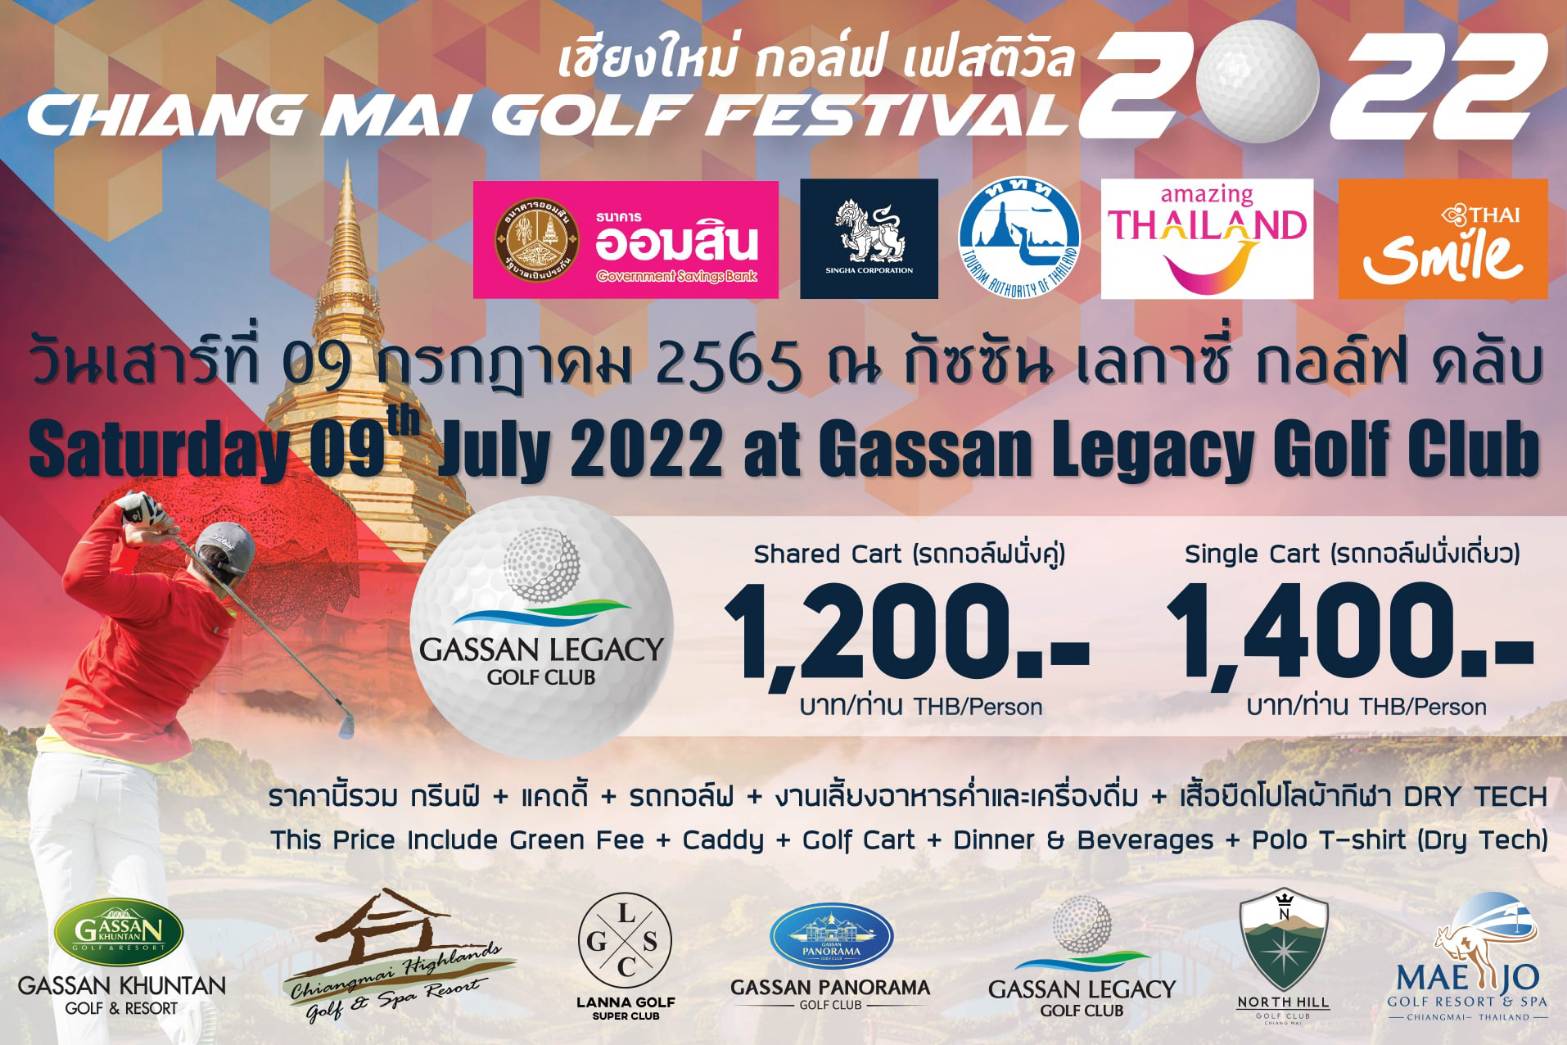 เชียงใหม่ กอล์ฟ เฟสติวัล 2022 Chiang Mai Golf Festival 2022 ขอเรียนเชิญท่านนักกอล์ฟเข้าร่วมการแข่งขันดวลวงสวิง Chiangmai Golf Festival 2022 ระหว่างเดือนพฤษภาคม - กันยายน 2565 ดวลวงสวิงสนามที่ 5 ‼️ 